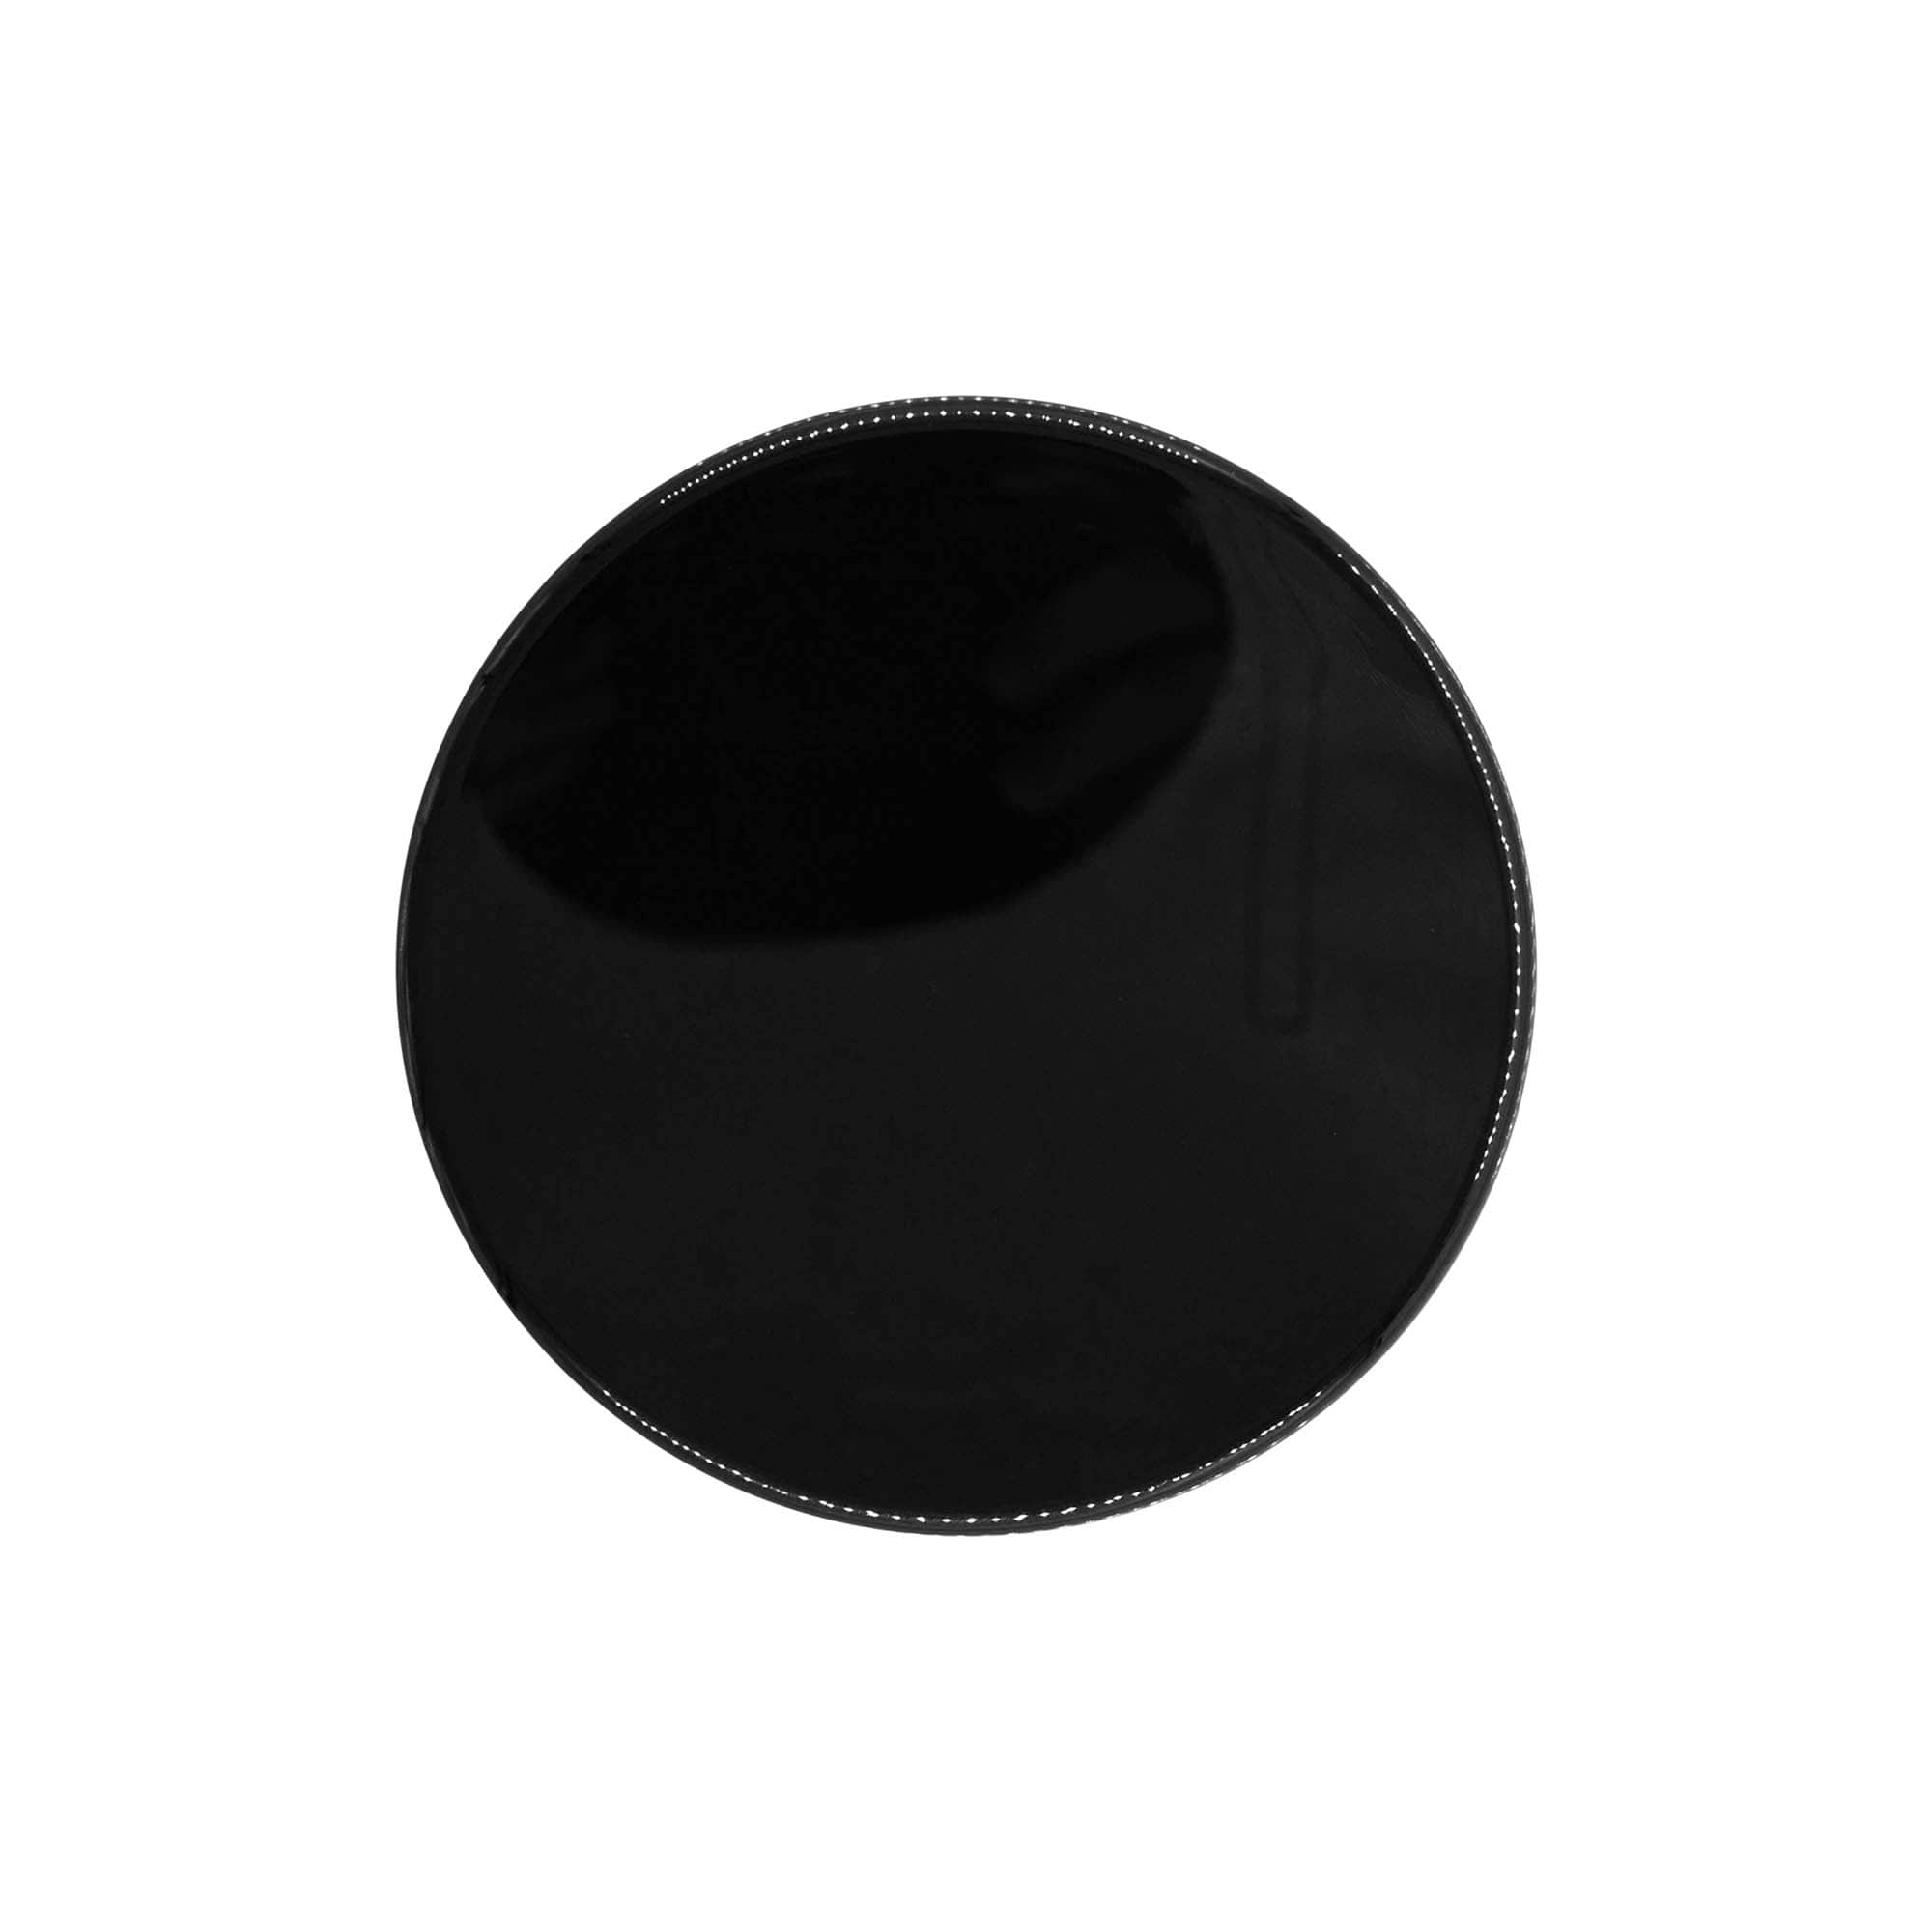 Screw cap, PP plastic, black, for opening: GPI 100/400